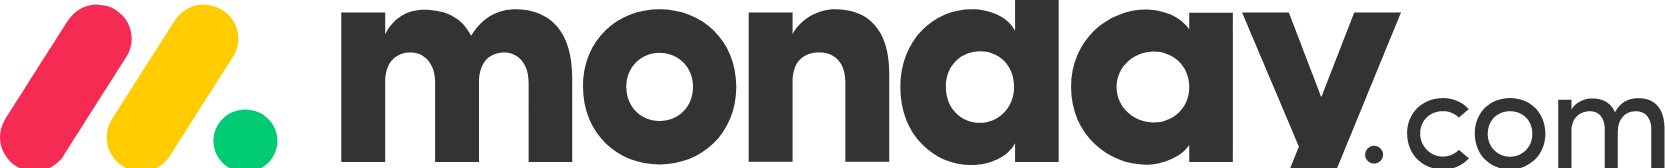 monday.com logo large (transparent PNG)